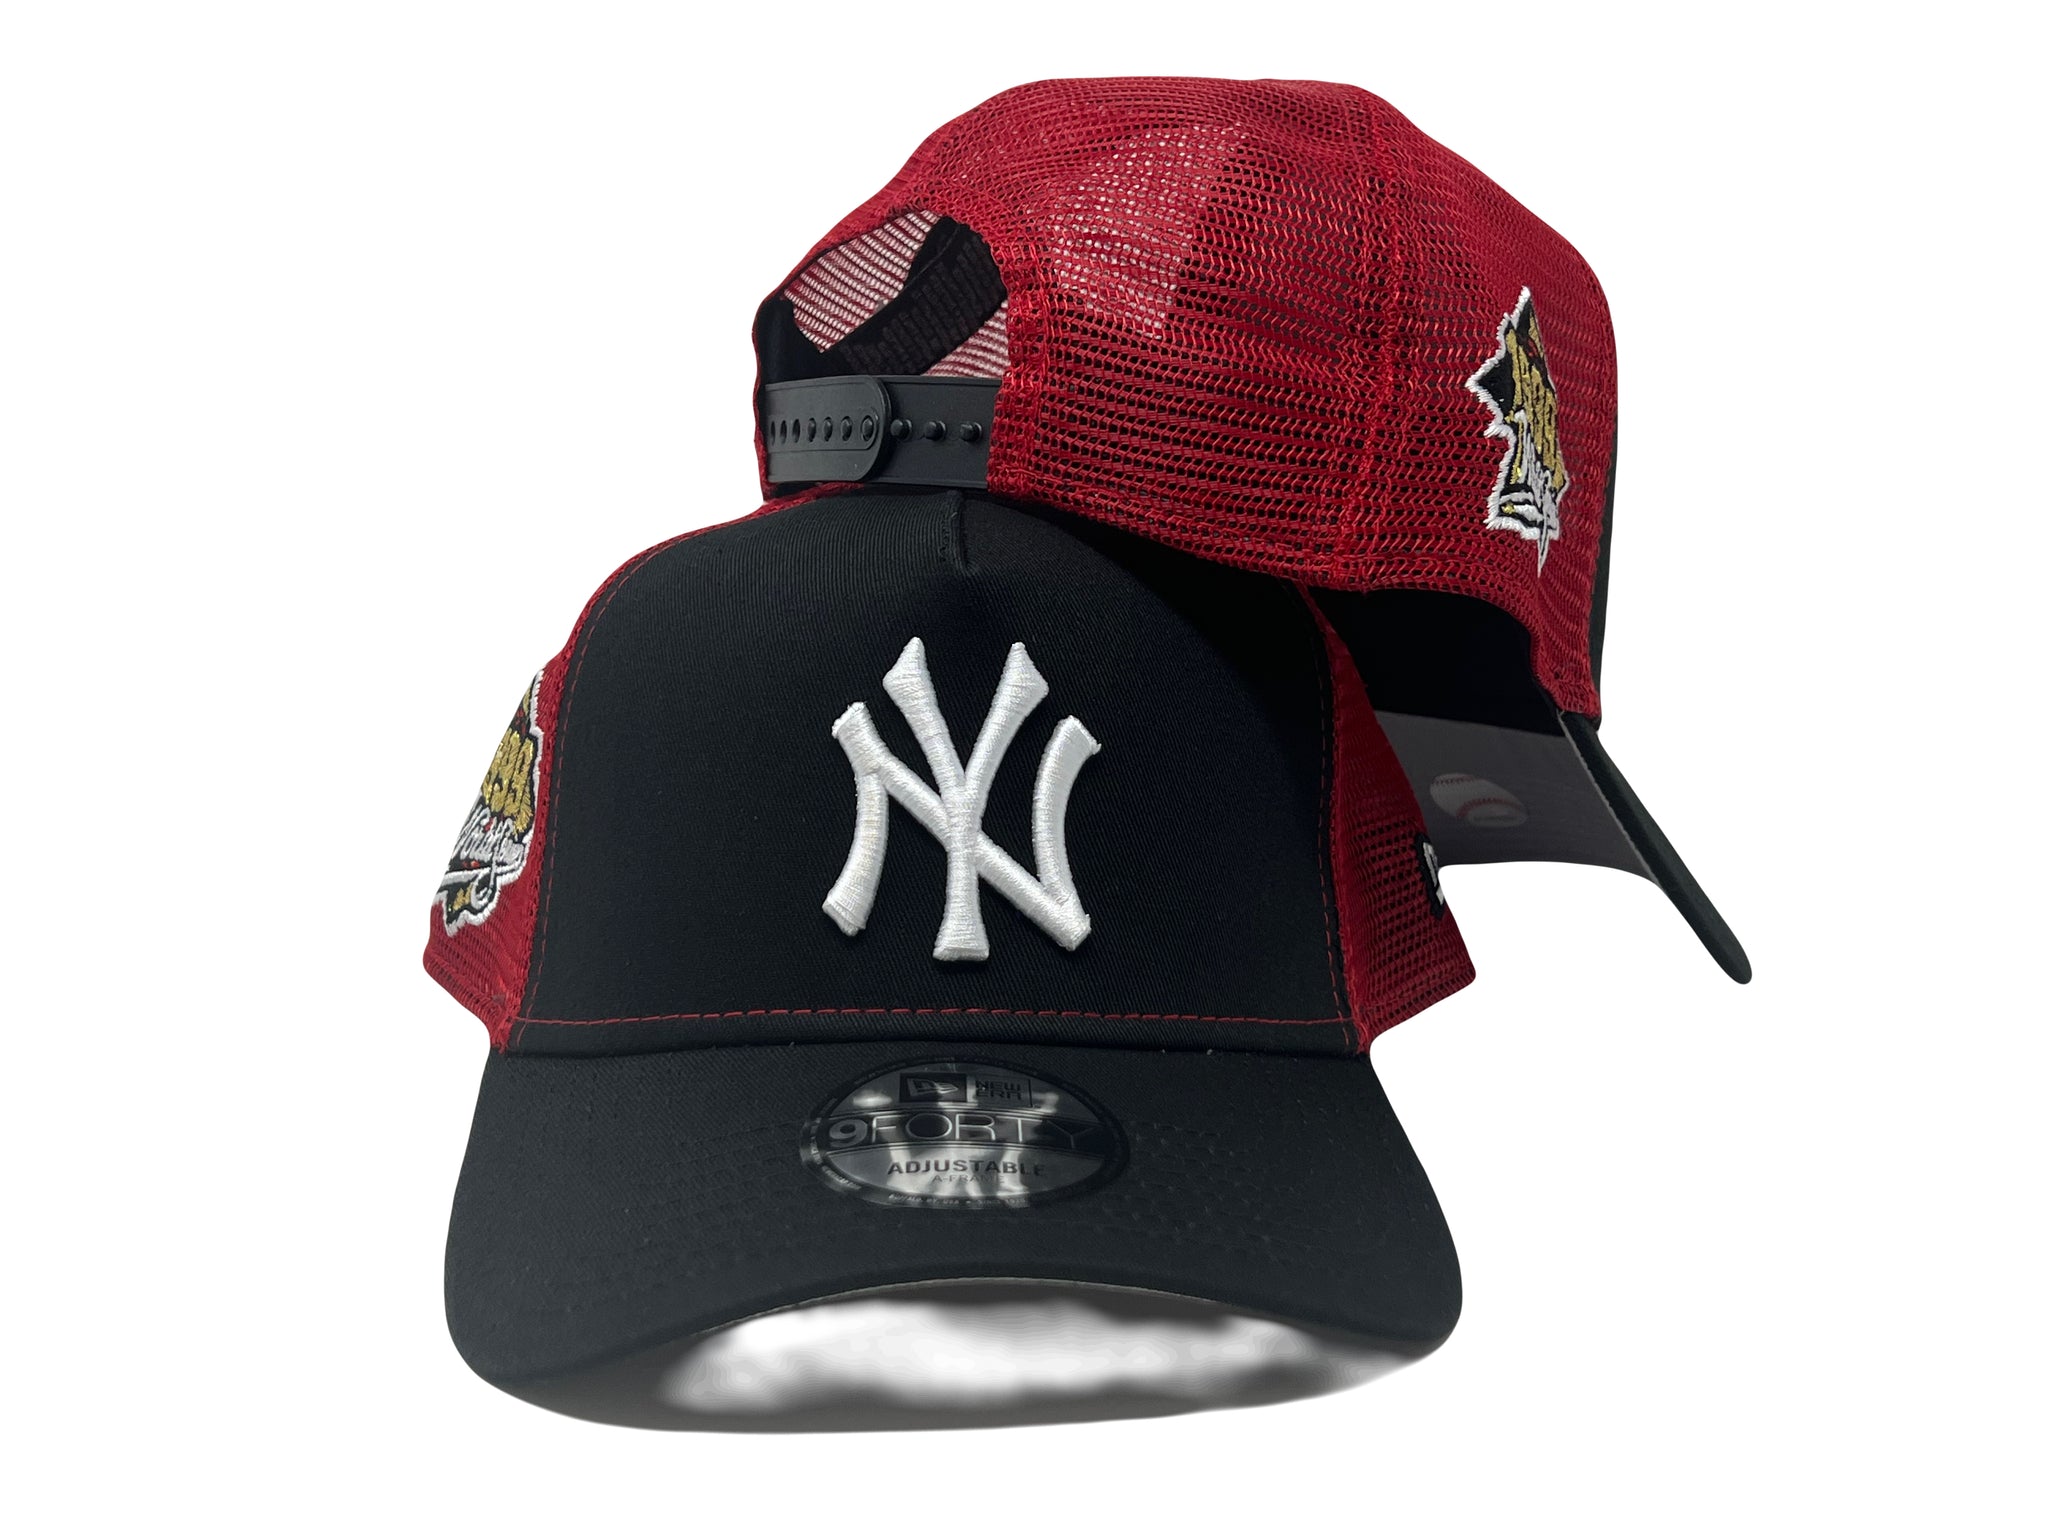 New Era New York Yankees Trucker Hat